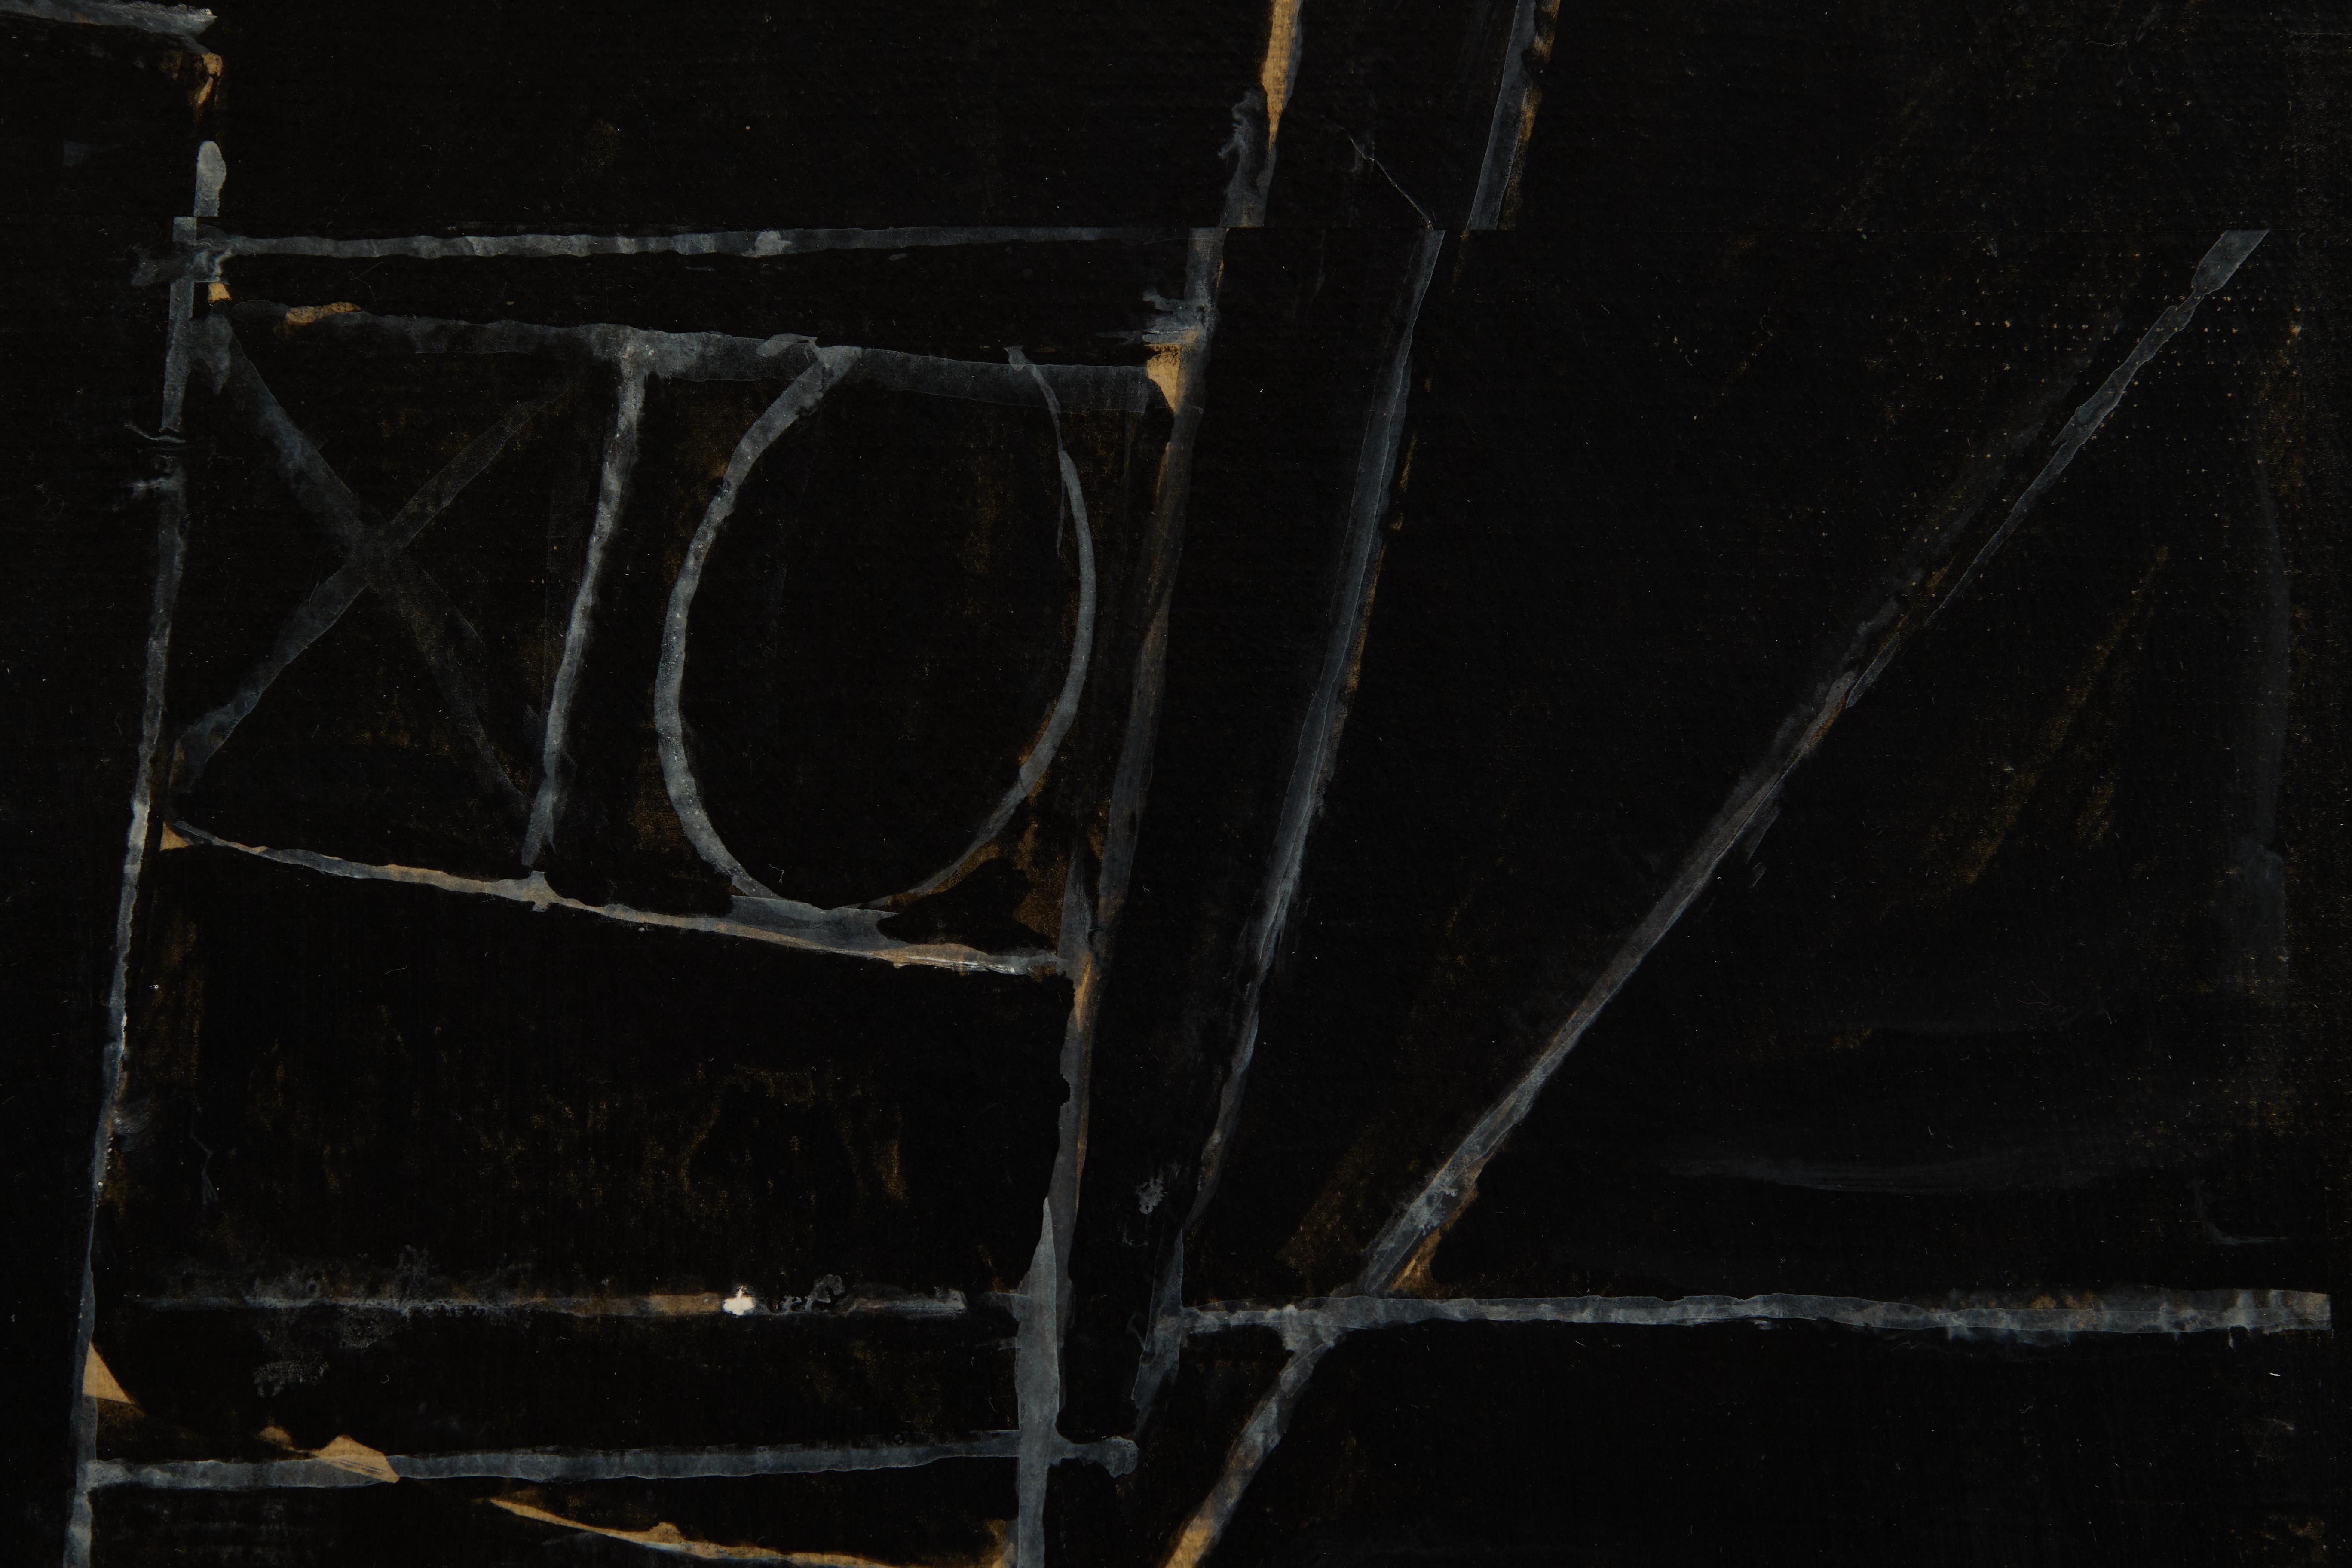 Richard Andre
Américain, 1927-2013
A.I.C., c. 1984
acrylique et encre sur papier marouflé sur toile
signé en bas à droite, signé et titré au verso
20 x 16 pouces

Richard Andre est né à Buffalo, dans l'État de New York, en 1927. Diplômé du Cleveland